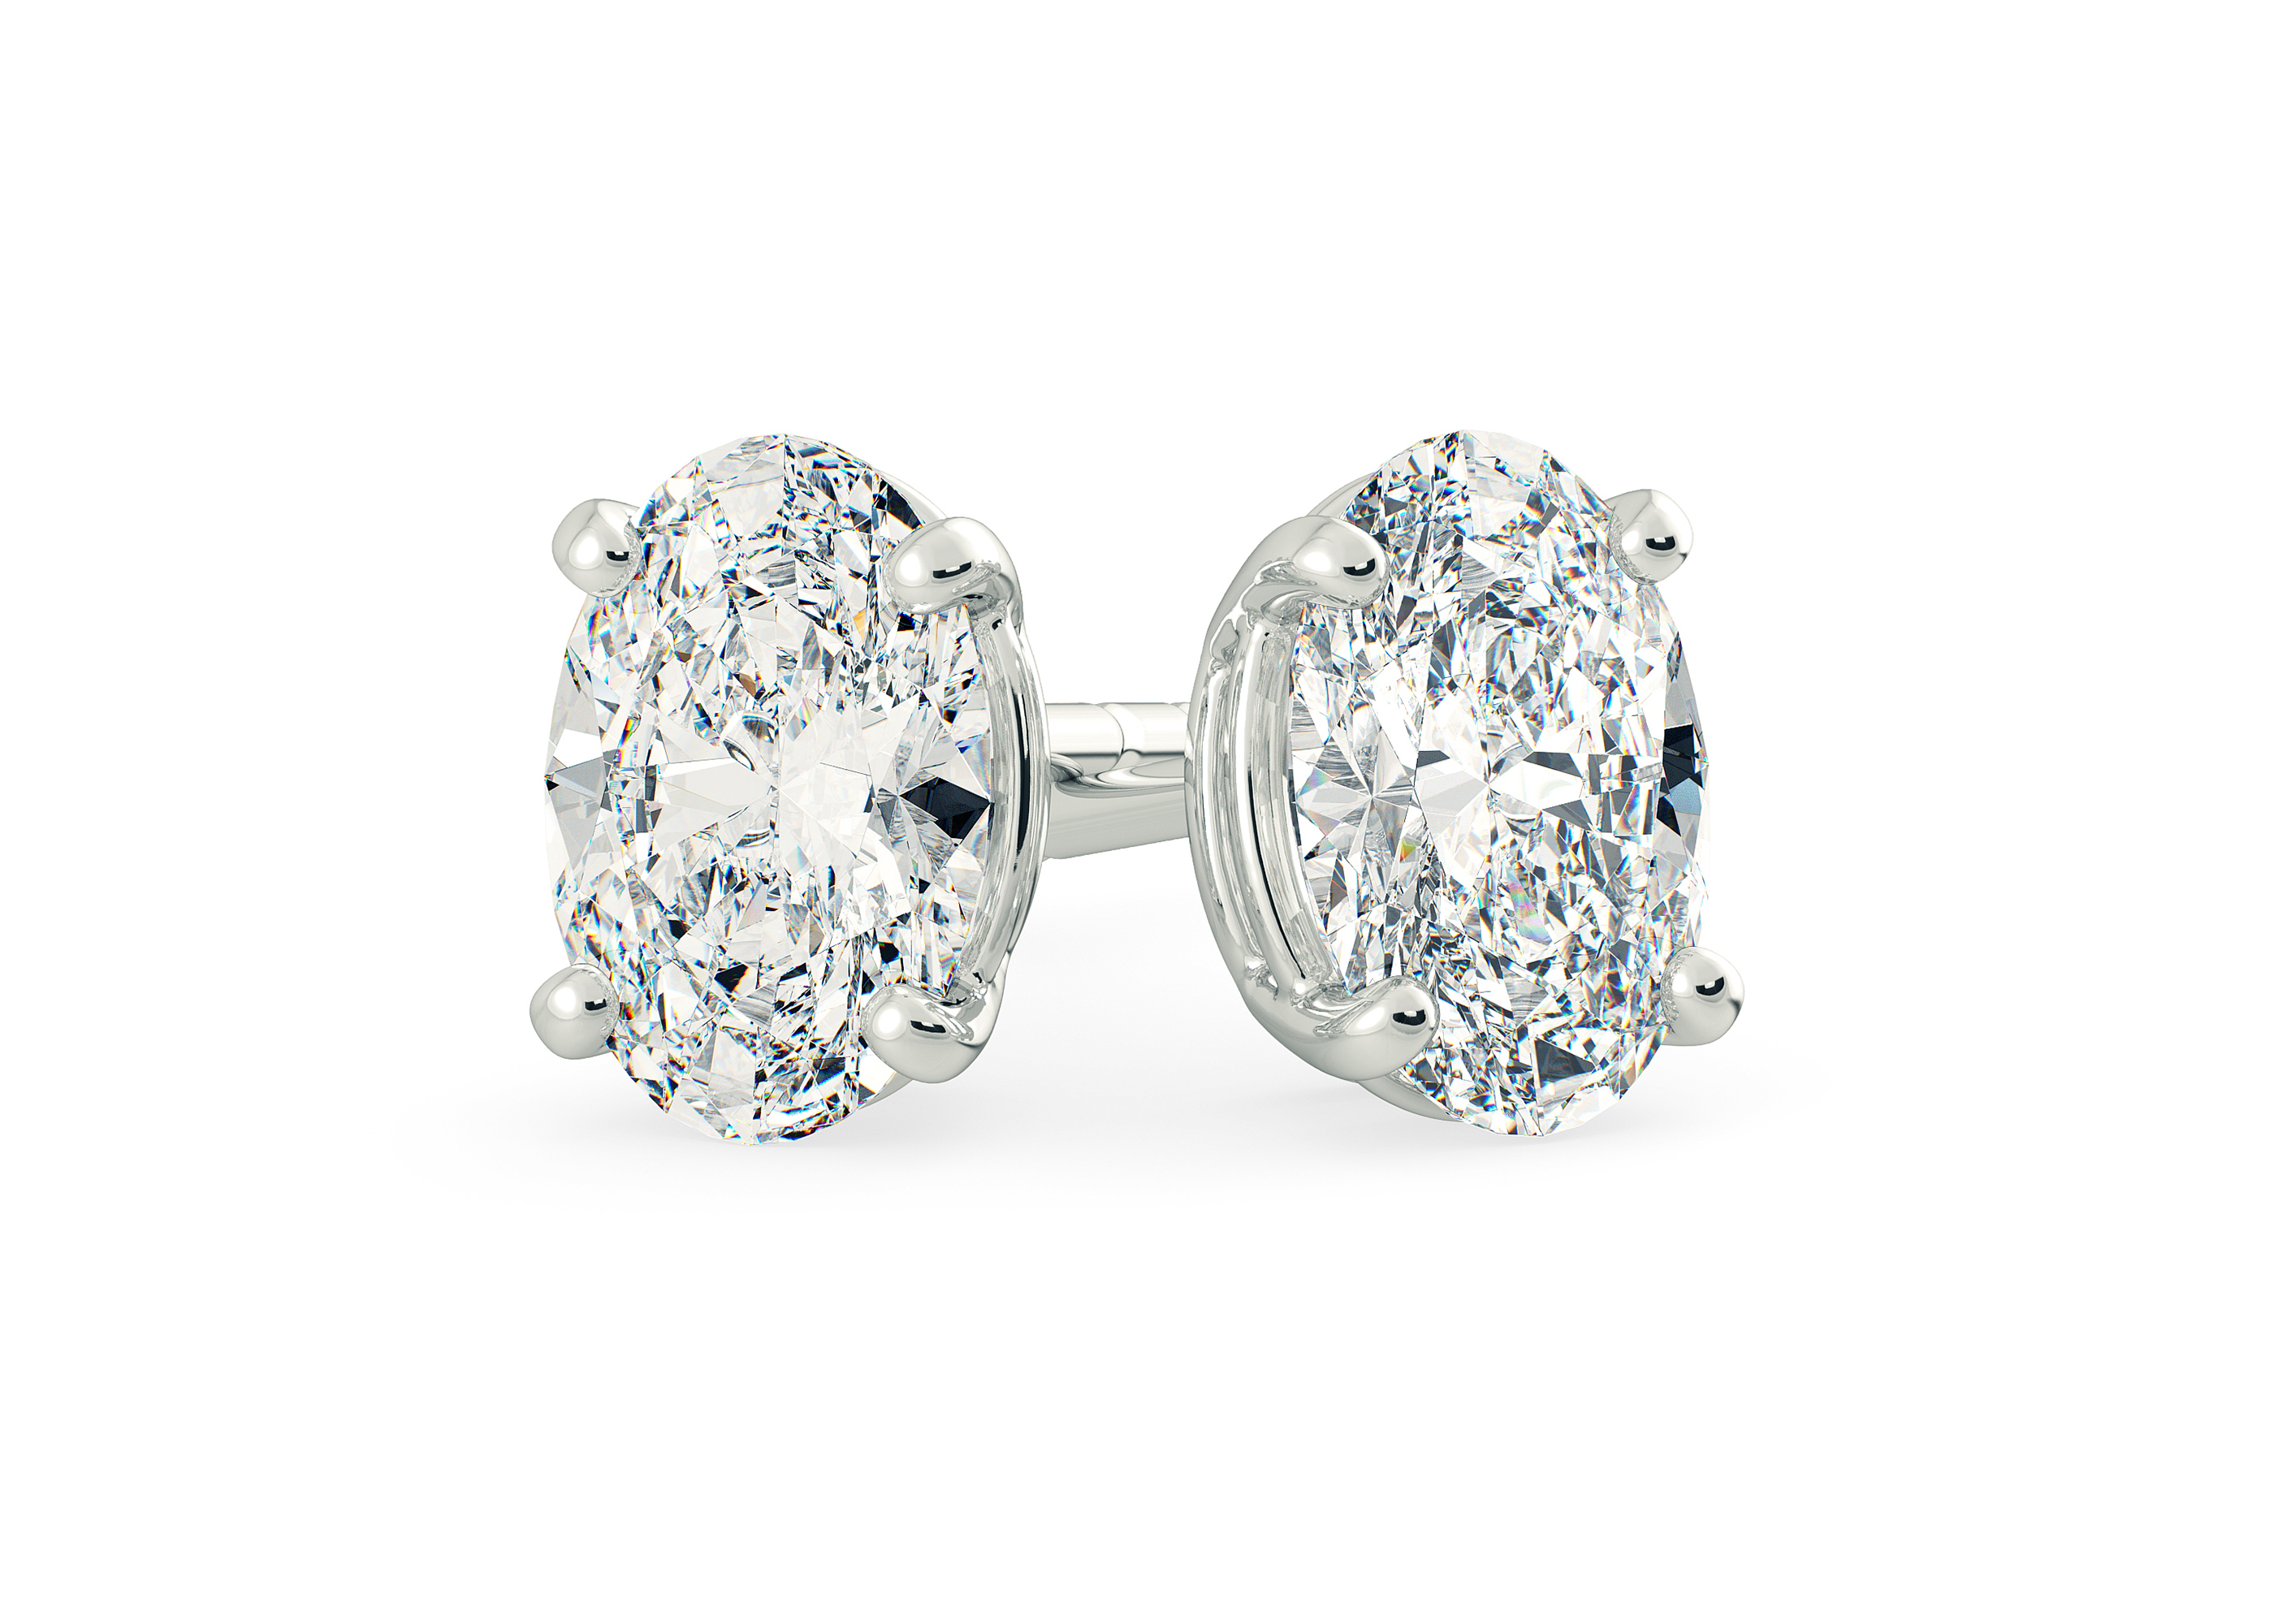 Two Carat Oval Diamond Stud Earrings in 18K White Gold